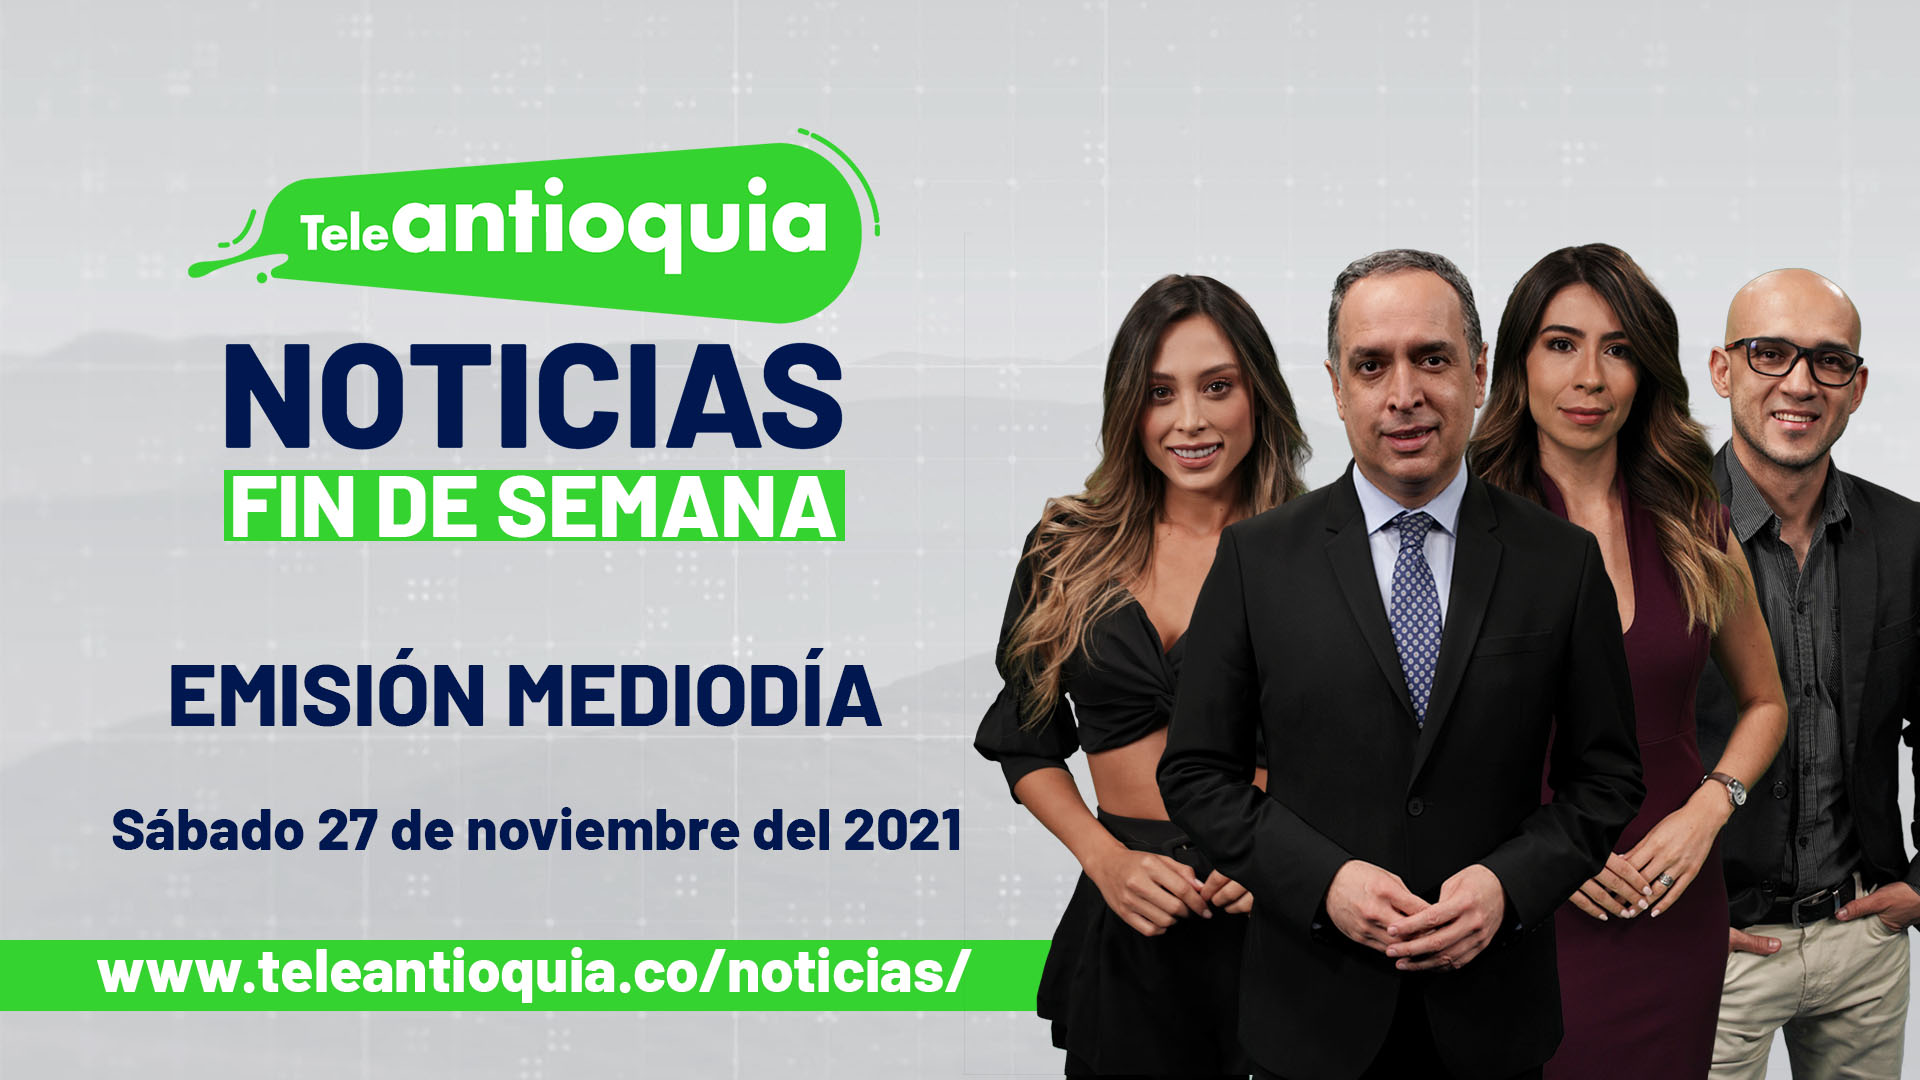 Teleantioquia Noticias – sábado 27 de noviembre de 2021 emisión mediodía